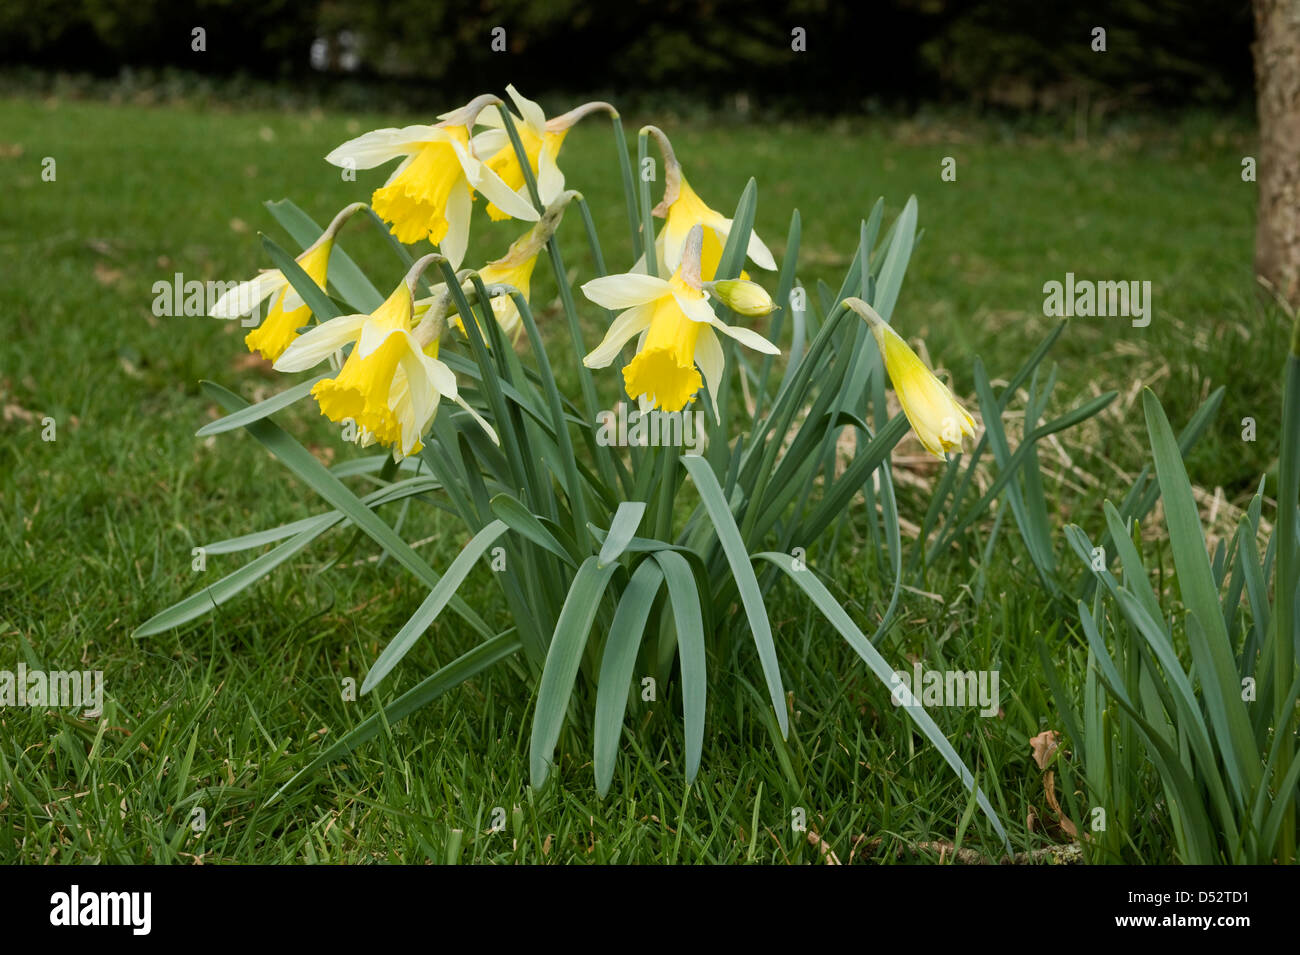 Une Jonquille sauvage ou prêté lily, Narcissus pseudonarcissus, en fleurs Banque D'Images